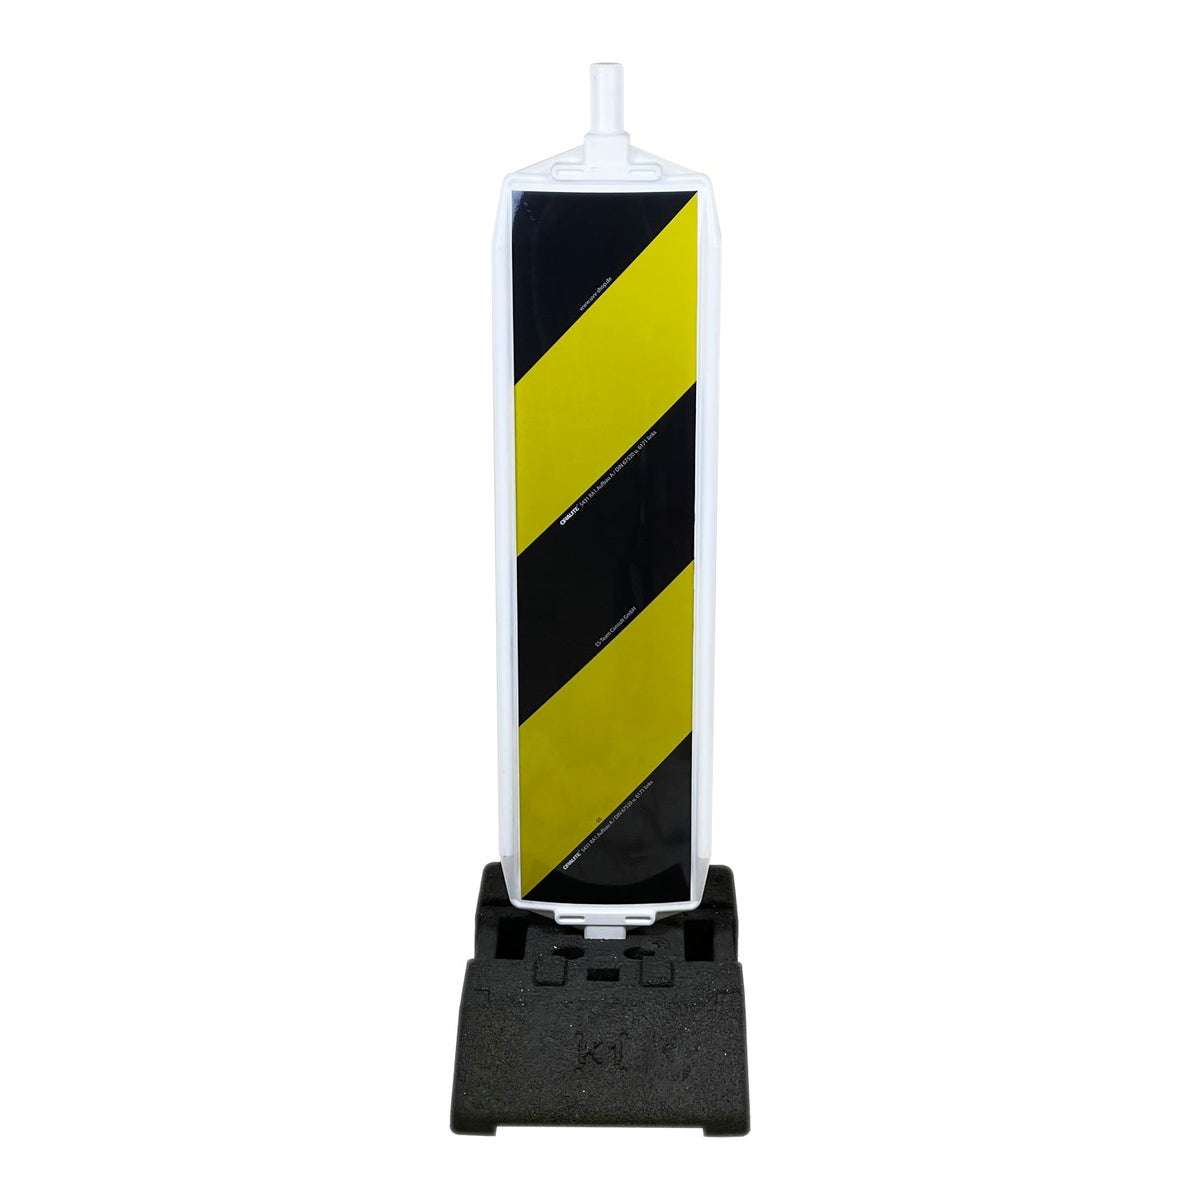 UvV Leitbake Fußplatte (18 / 30 kg) Baustelle rot/weiß oder Lager gelb, schwarz / RA1 schwarz / gelb / K1 (28 kg) / ohne Baustellenleuchte